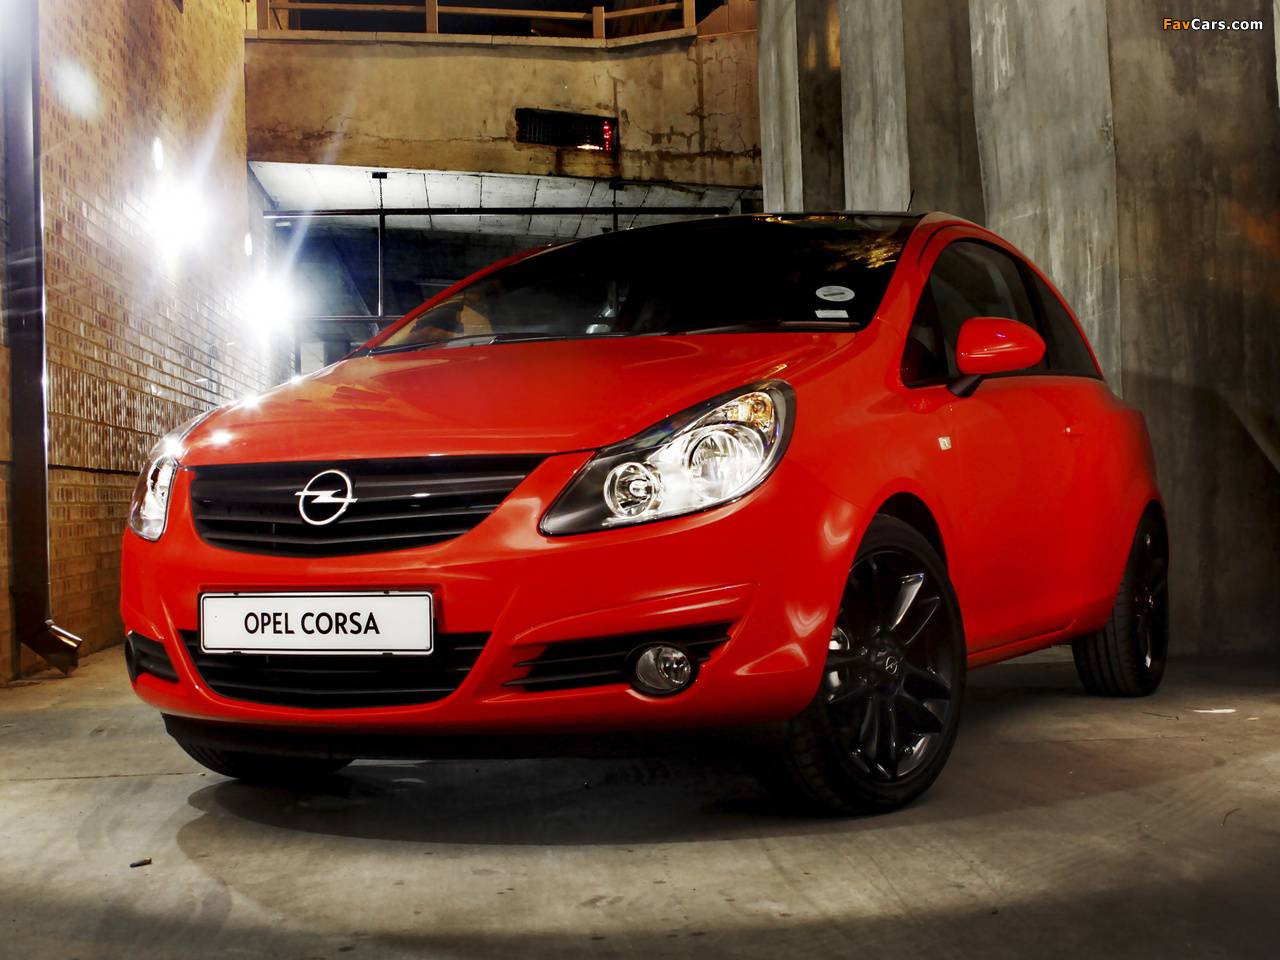 Opel corsa d, характерные особенности автомобиля, уязвимые места, отзывы владельцев